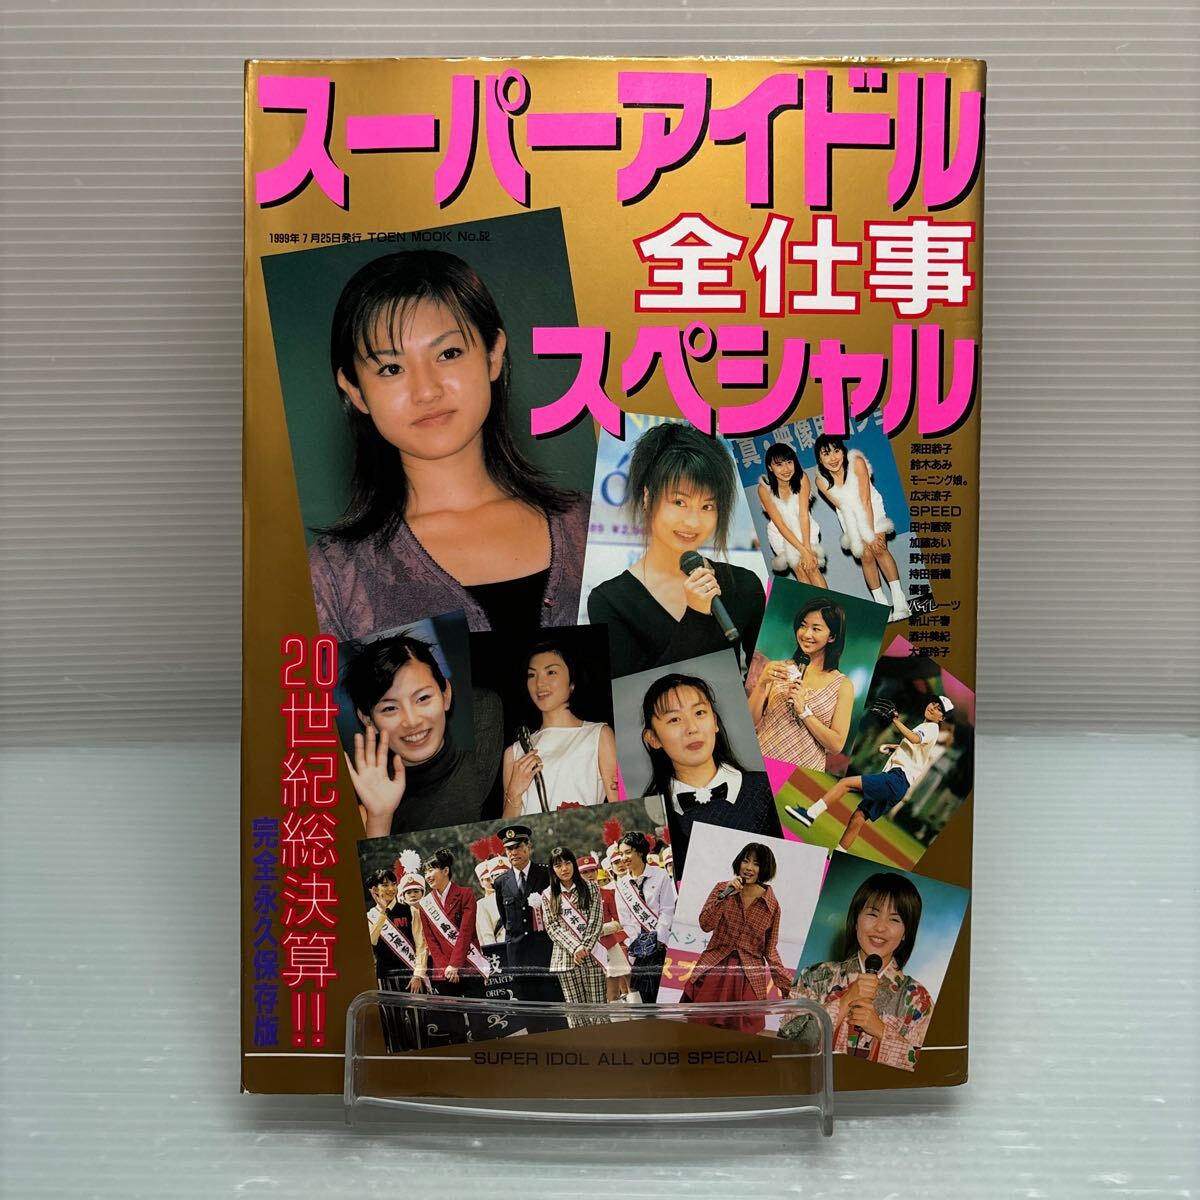 【雑誌】S0417 ②スーパーアイドル全仕事スペシャル　1999/7_画像1